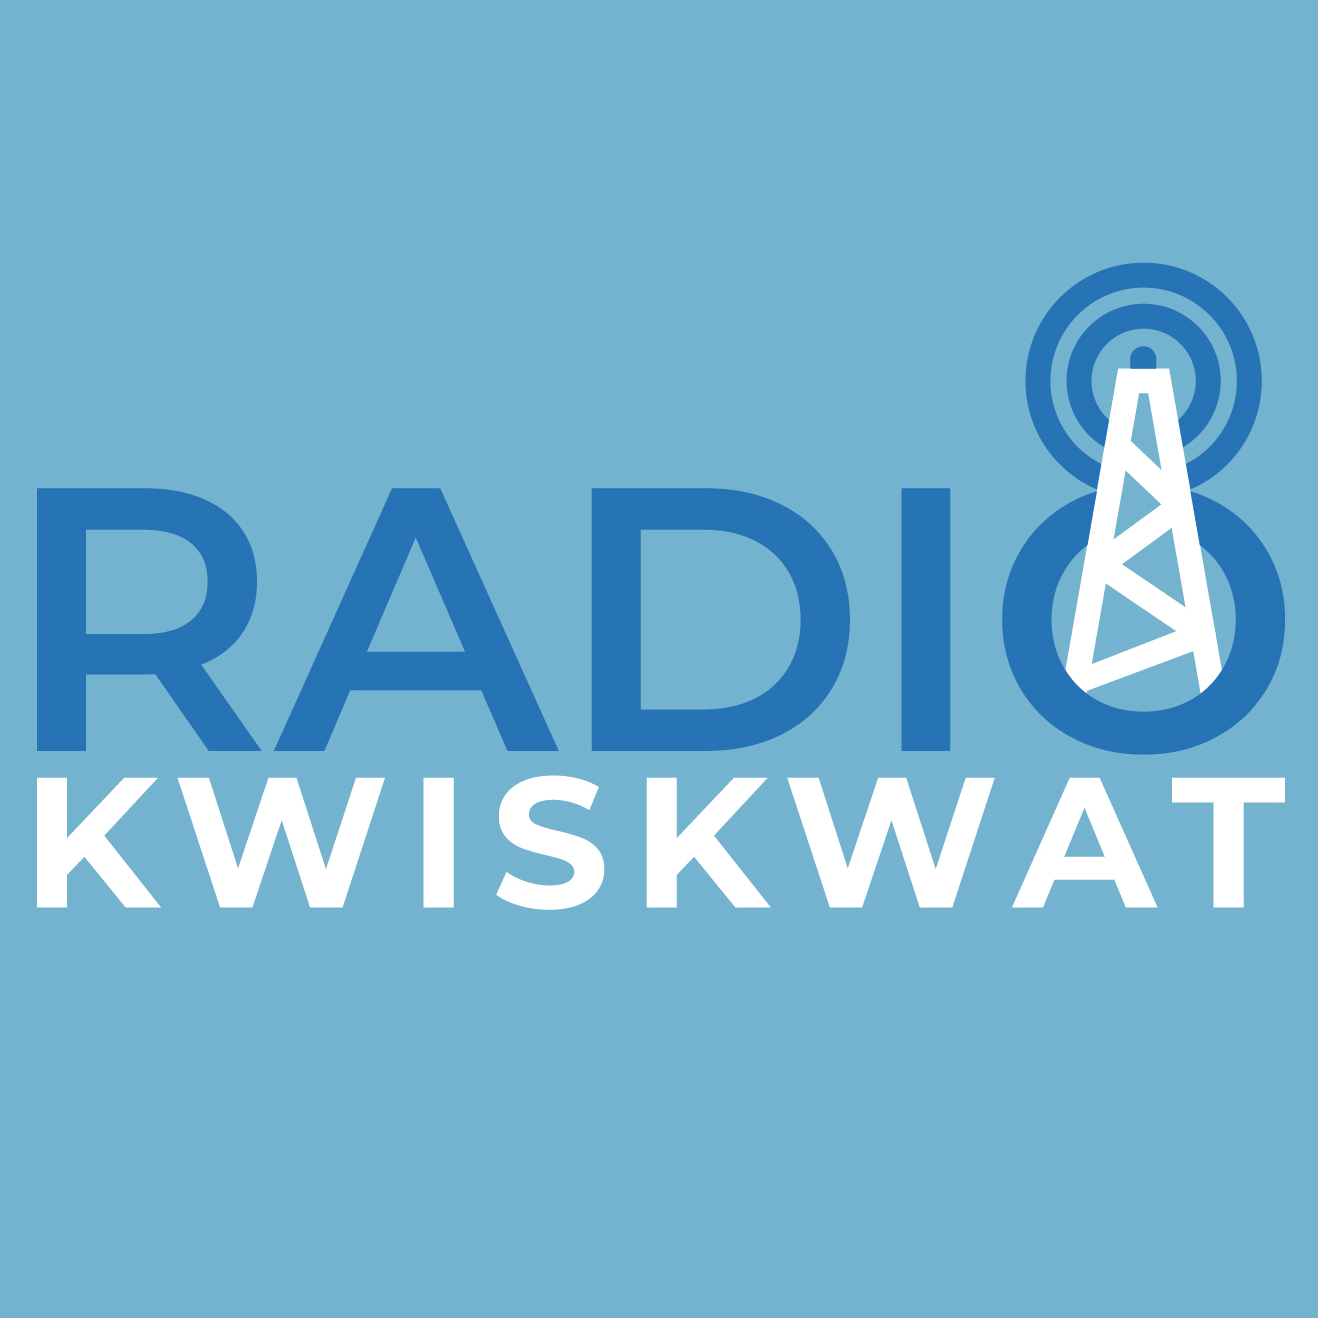 Radio Kwiskwat